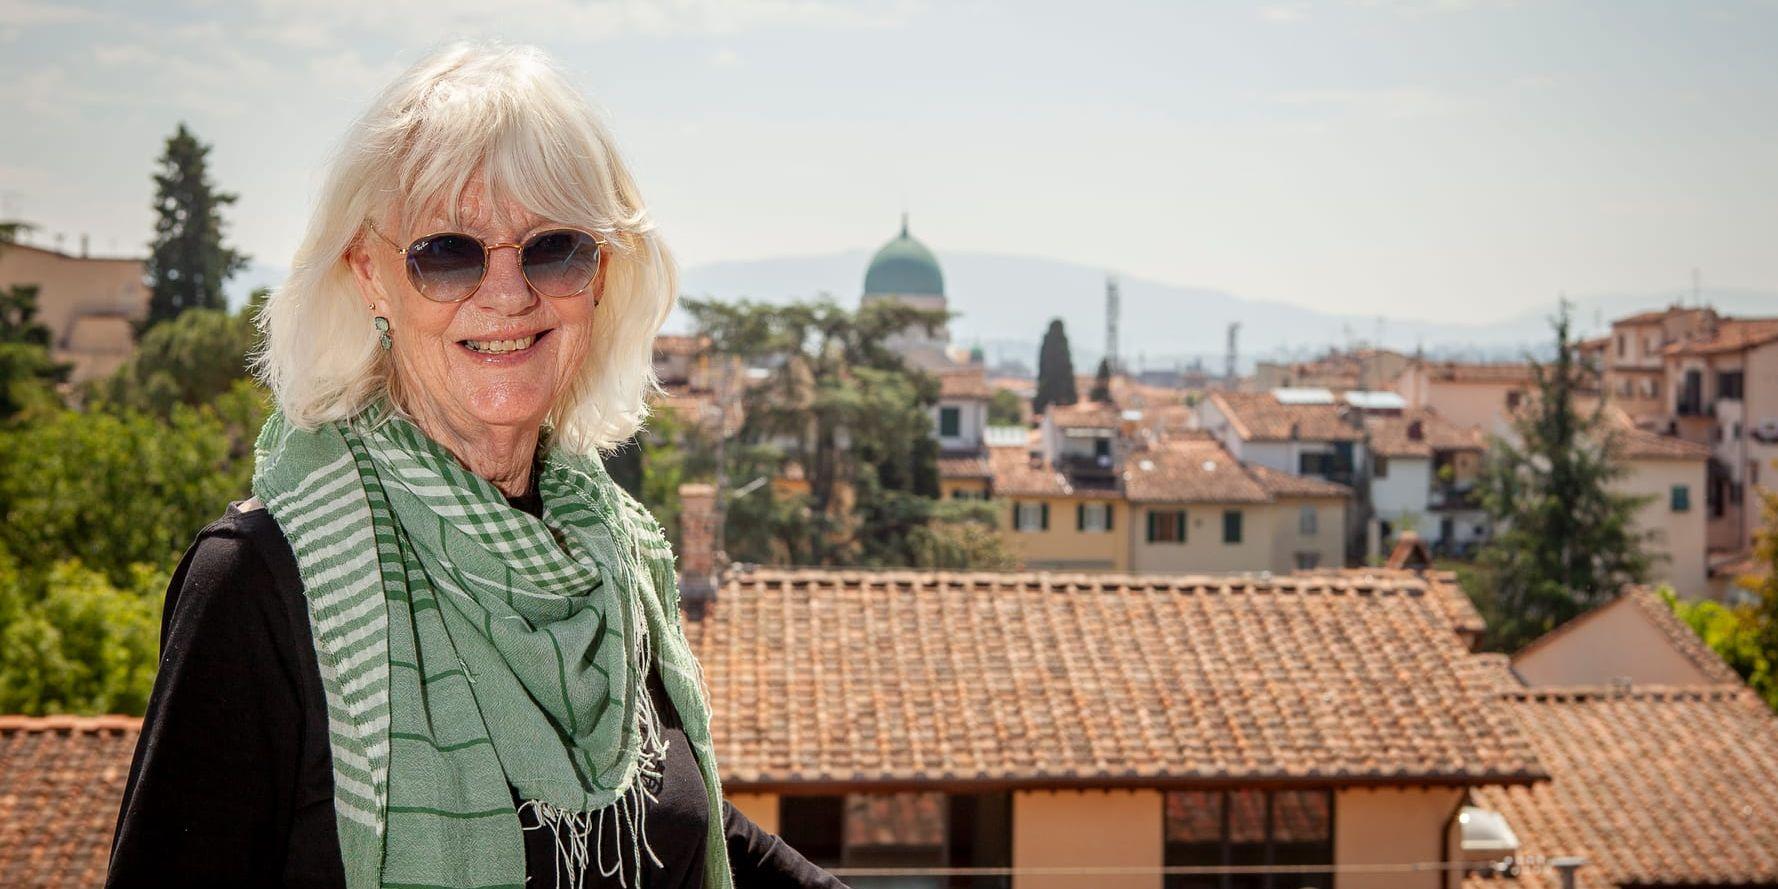 Agneta Helldal från Falkenberg har bott i Italien i 45 år och sedan drygt 20 år tillbaka arbetar hon som guide i Florens. Åtskilliga svenska turister har tack vare henne hittat till konstskatter, marknader, affärer, restauranger och mycket annat. I bakgrunden skymtar takkupolen på Santa Maria del Fiore.